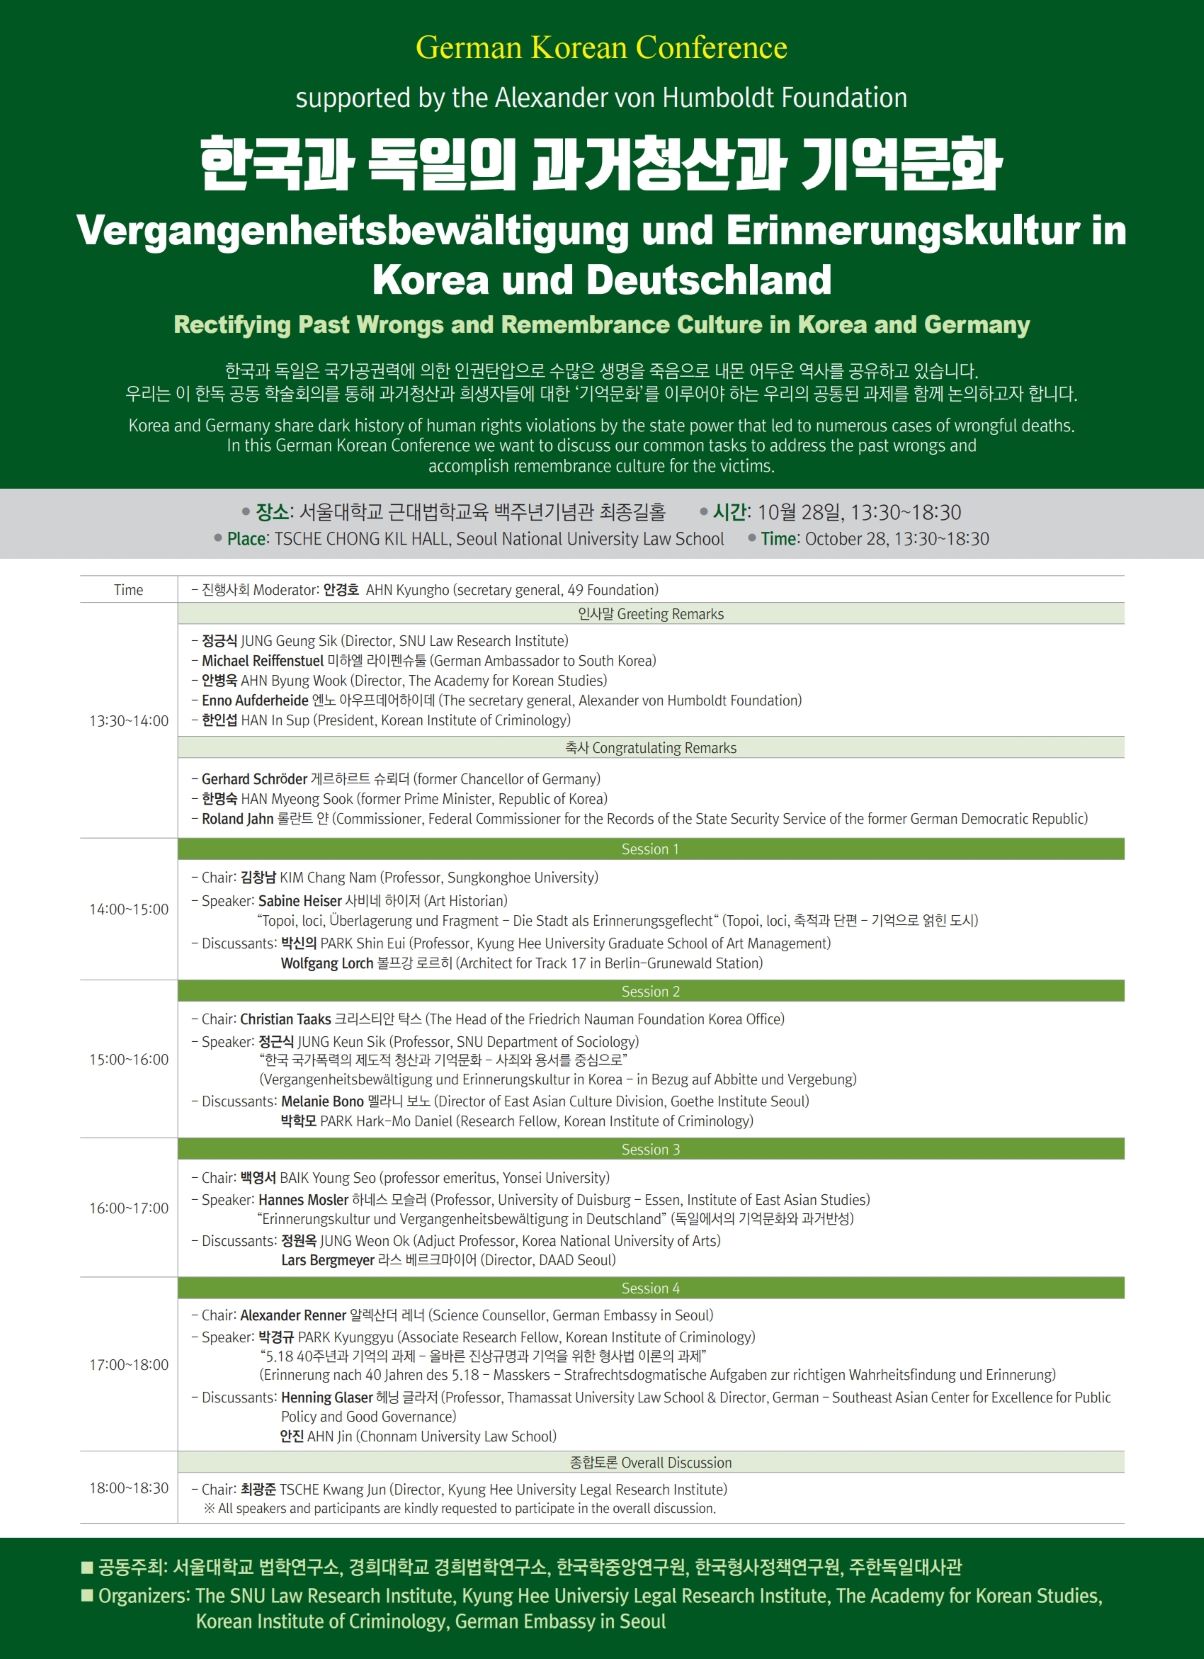 [포스터]한국과 독일의 과거청산과 기억문화_최종_이메일용.jpg